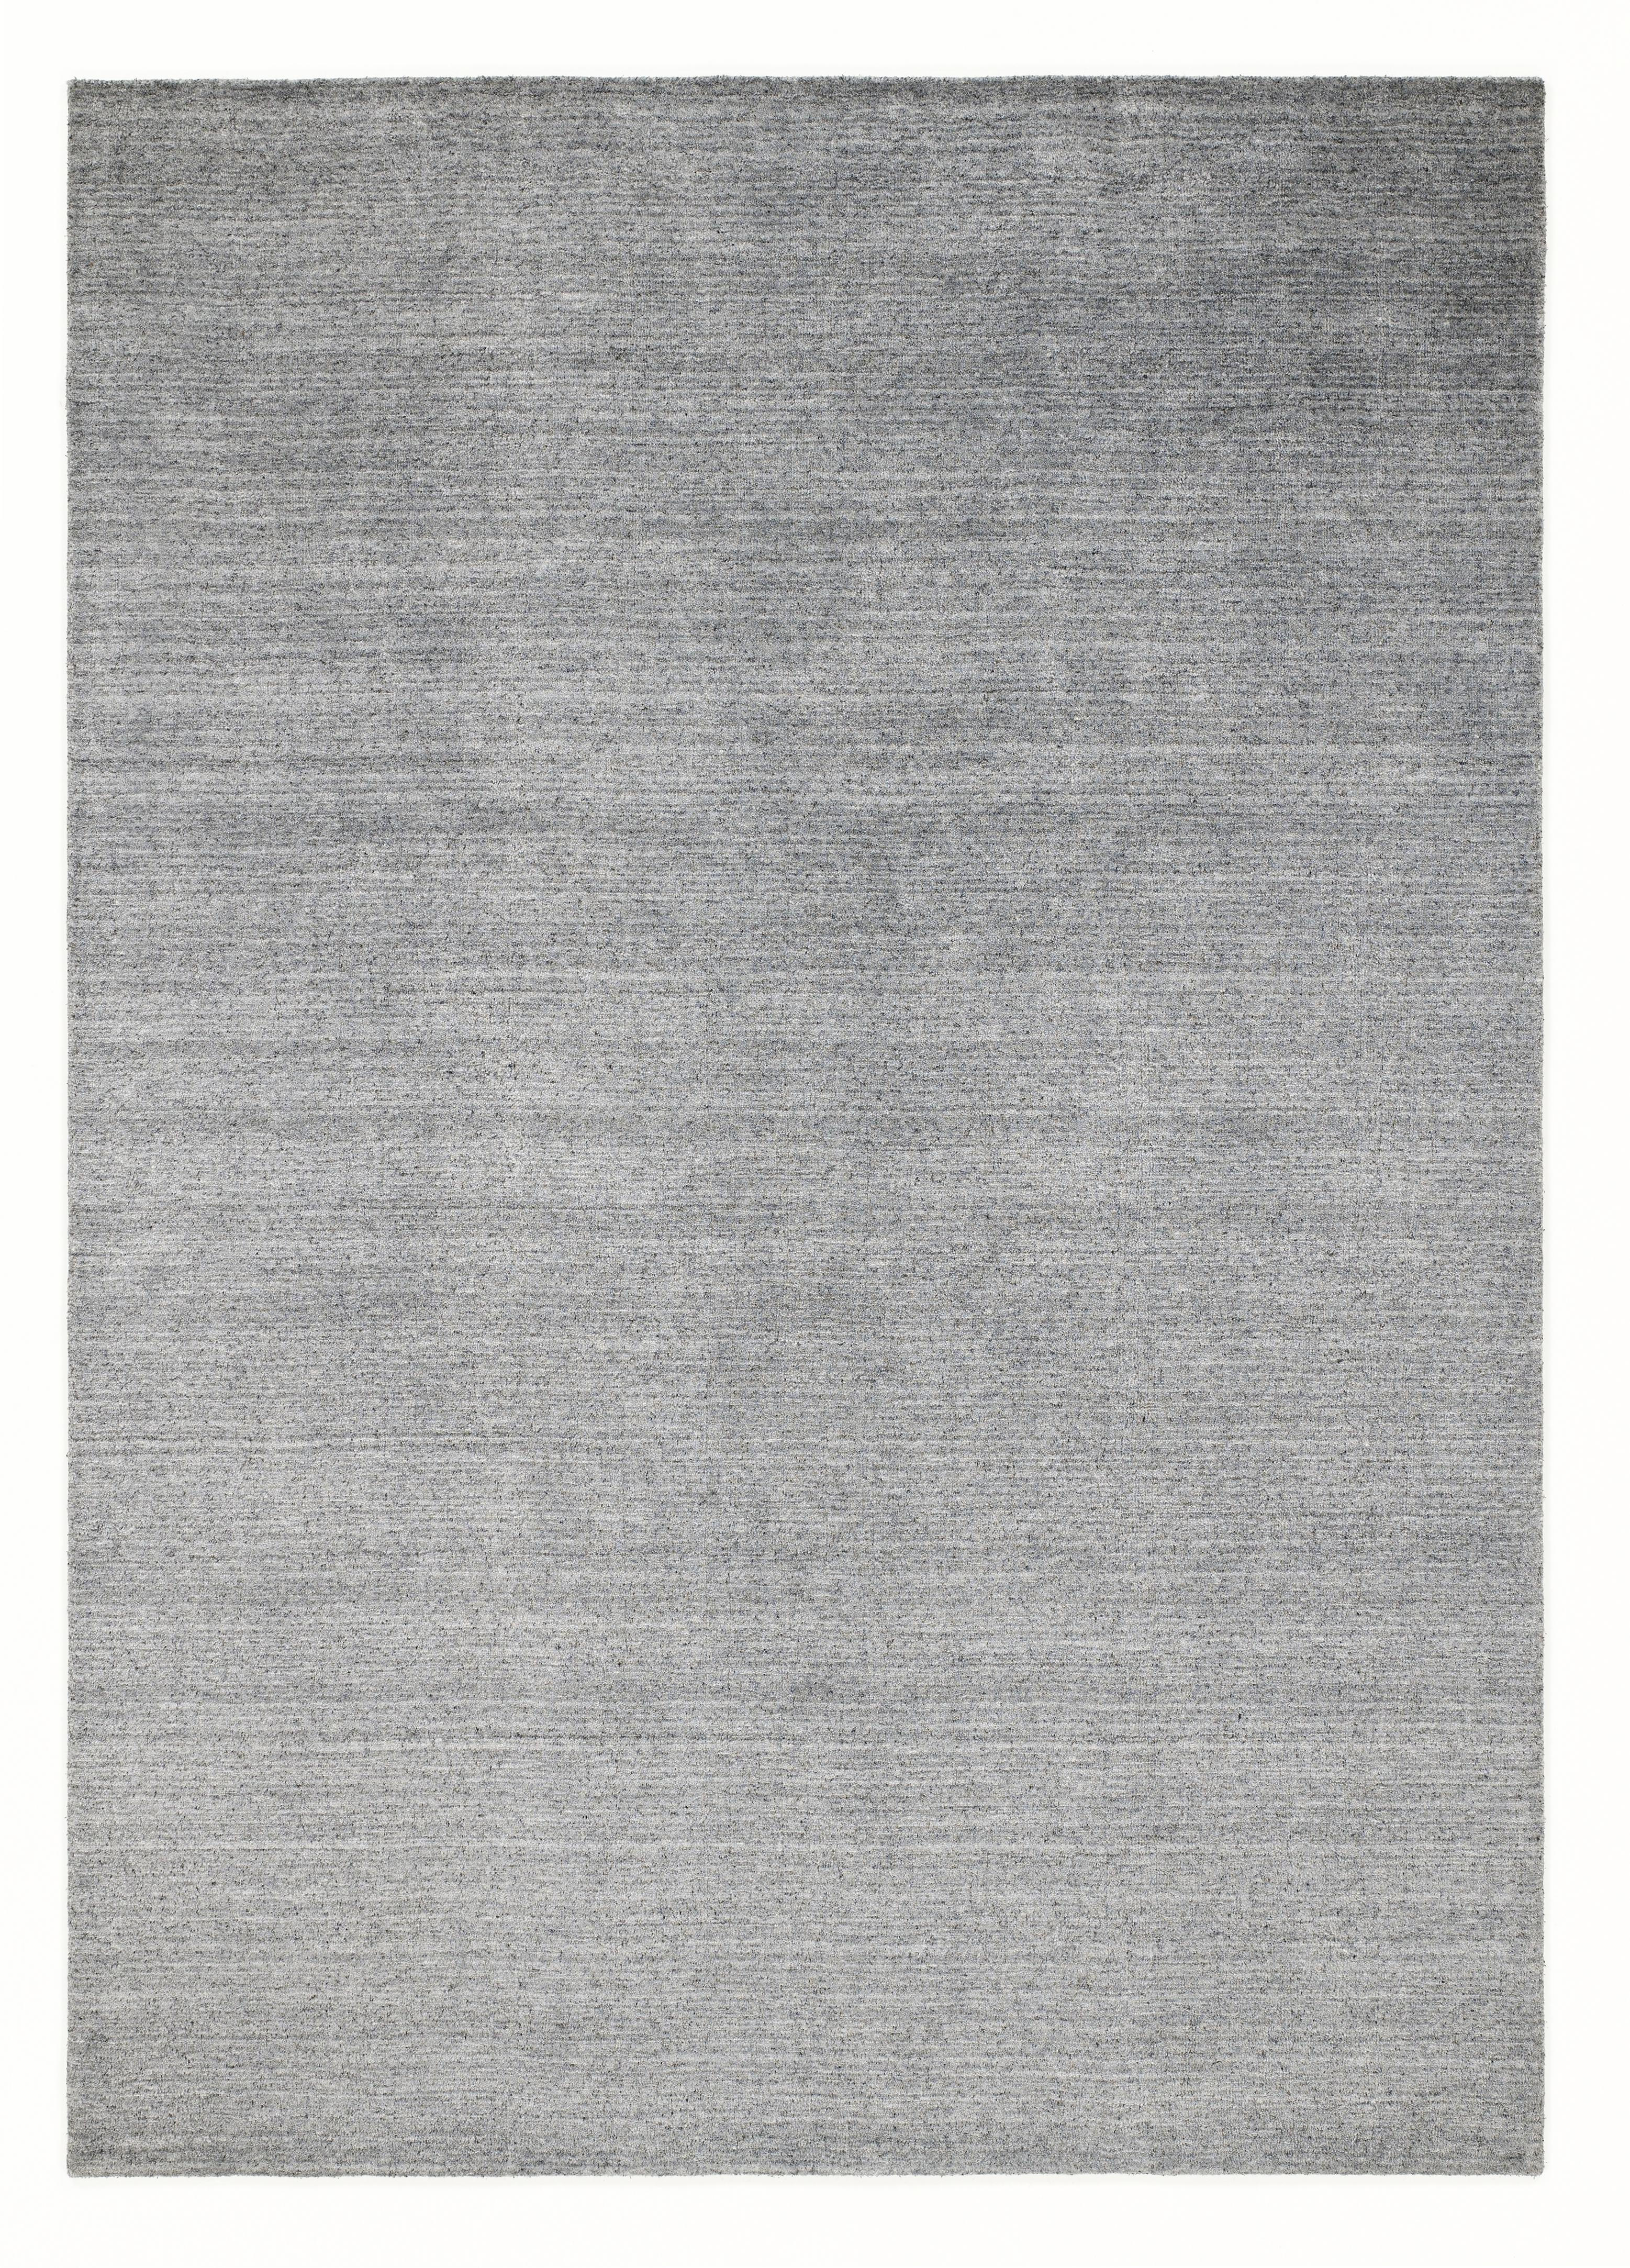 ORIENTTEPPICH  Malibu  - Silberfarben, KONVENTIONELL, Textil (70/140cm) - Musterring